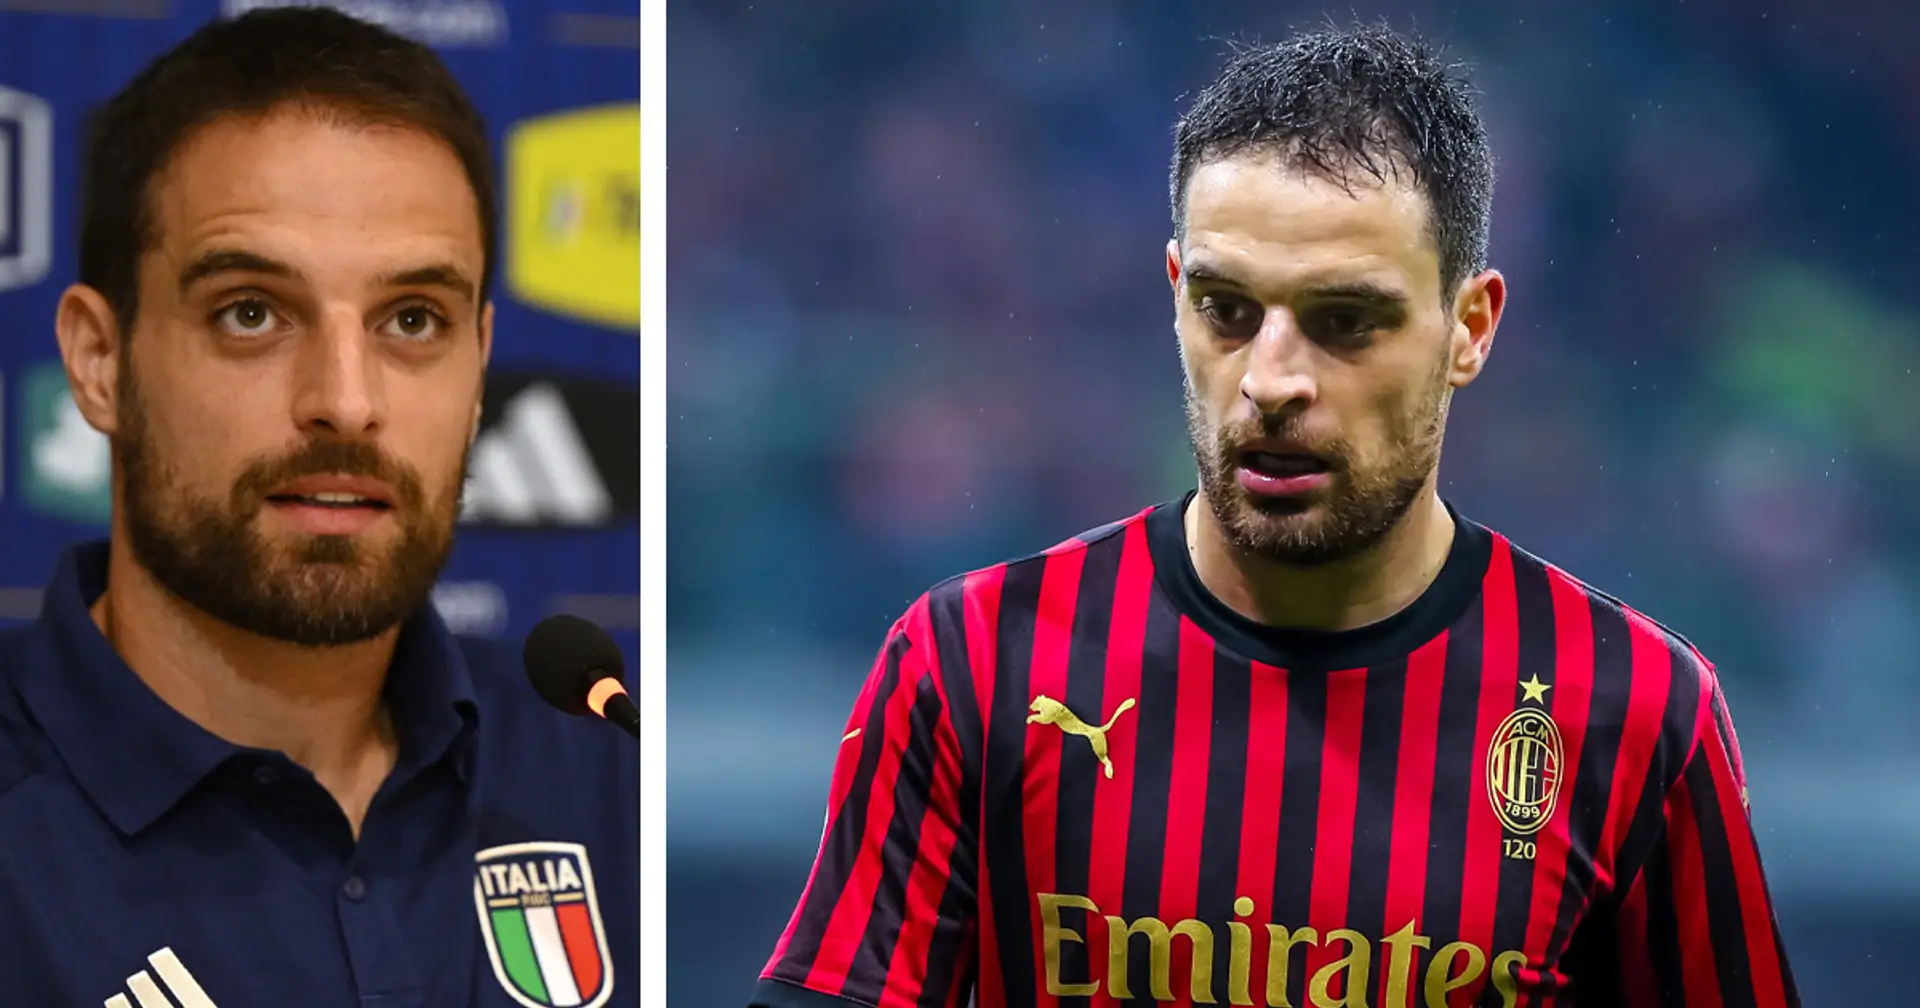 "Lasciai il Milan molto motivato": Bonaventura rinato dopo l'addio, torna in Nazionale a 34 anni